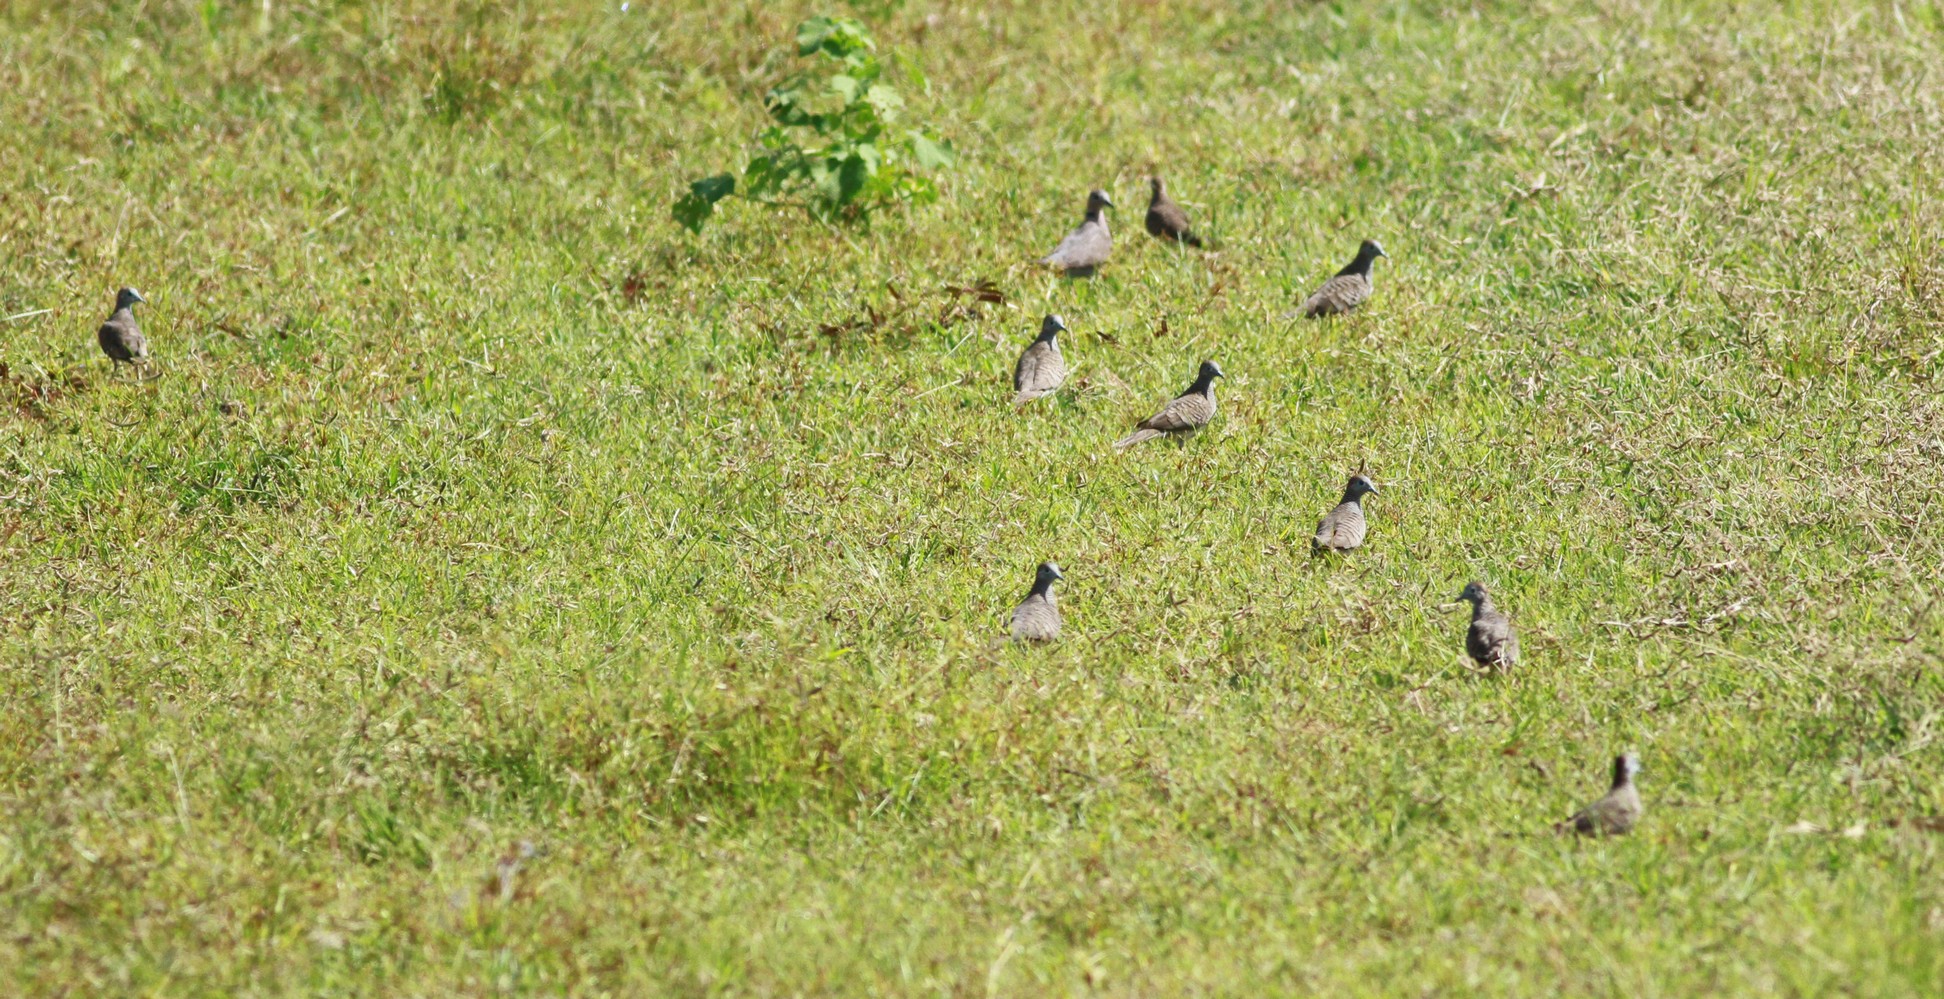 Cu gáy vằn (Geopelia striata): Loài chim ngoại lai trong hoang dã ở Việt Nam